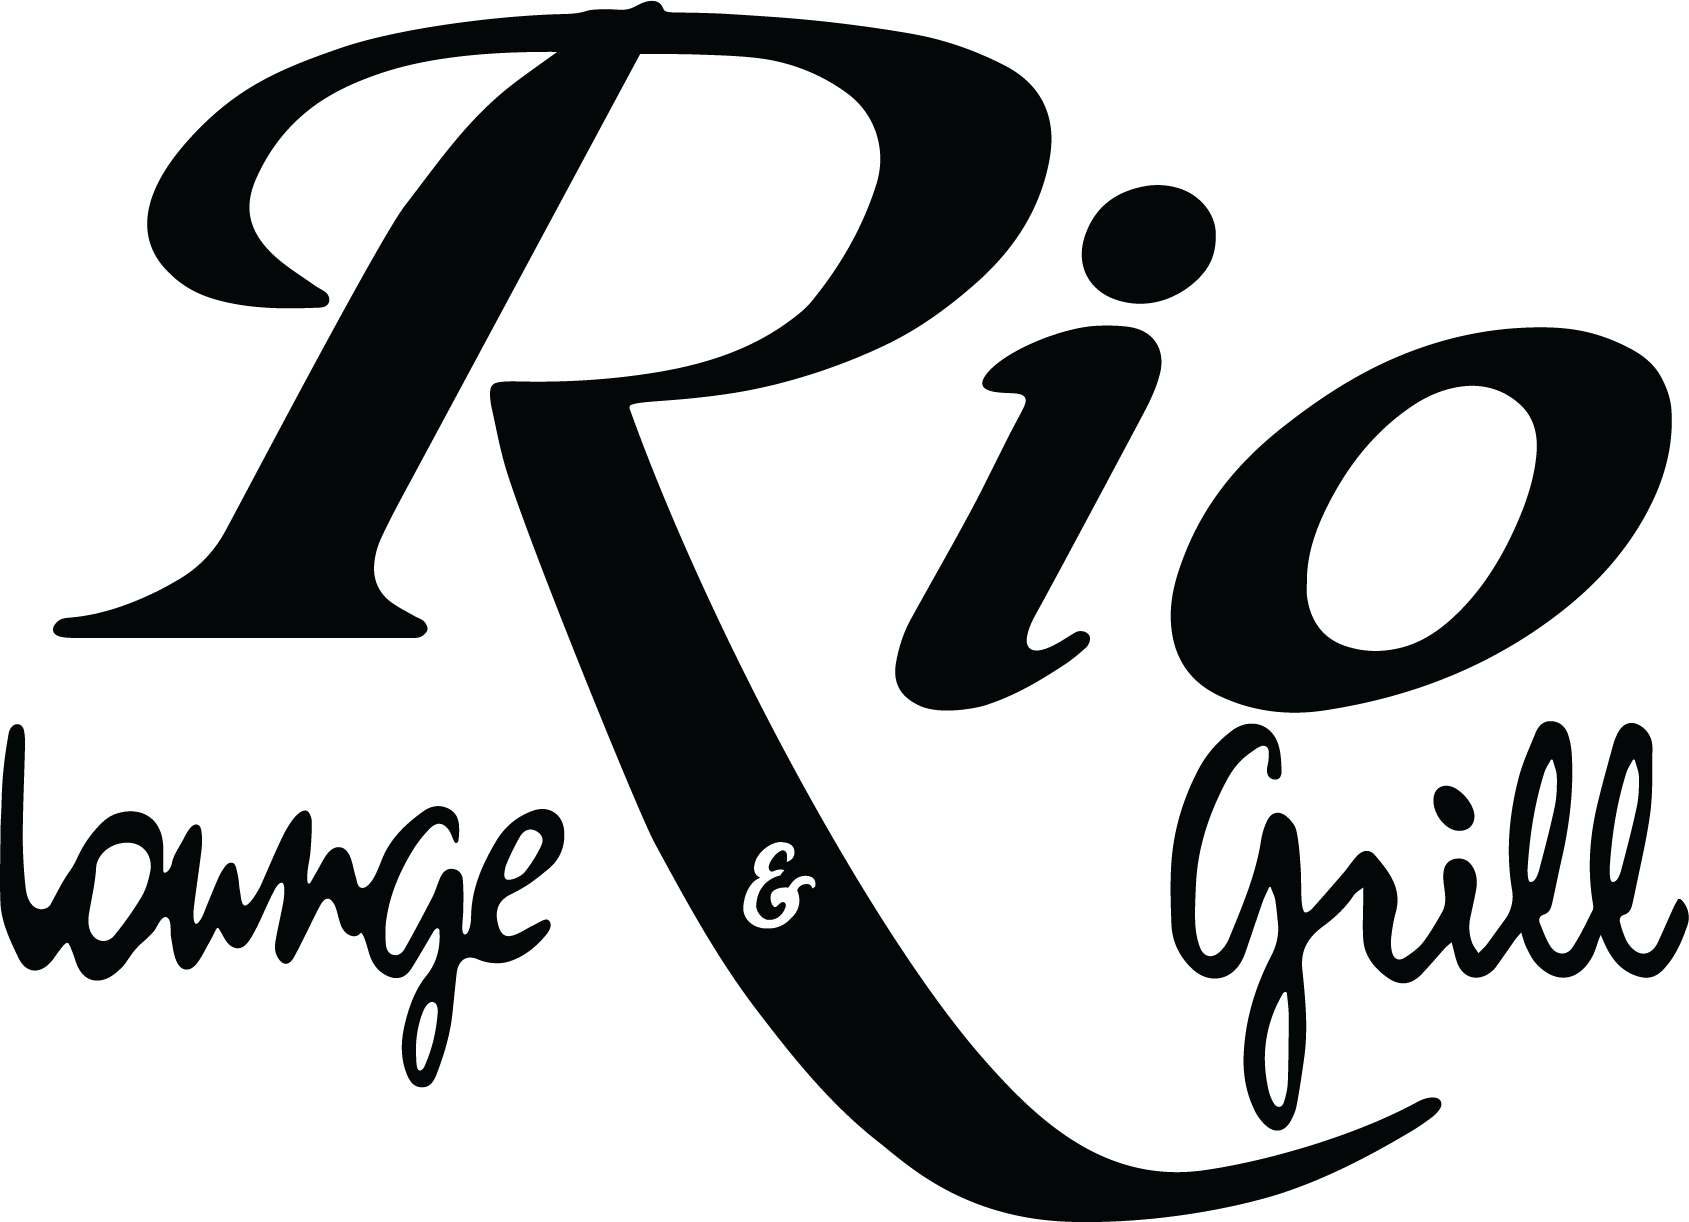 Rio Lounge And Grill - Rio Lounge And Grill (1689x1222)